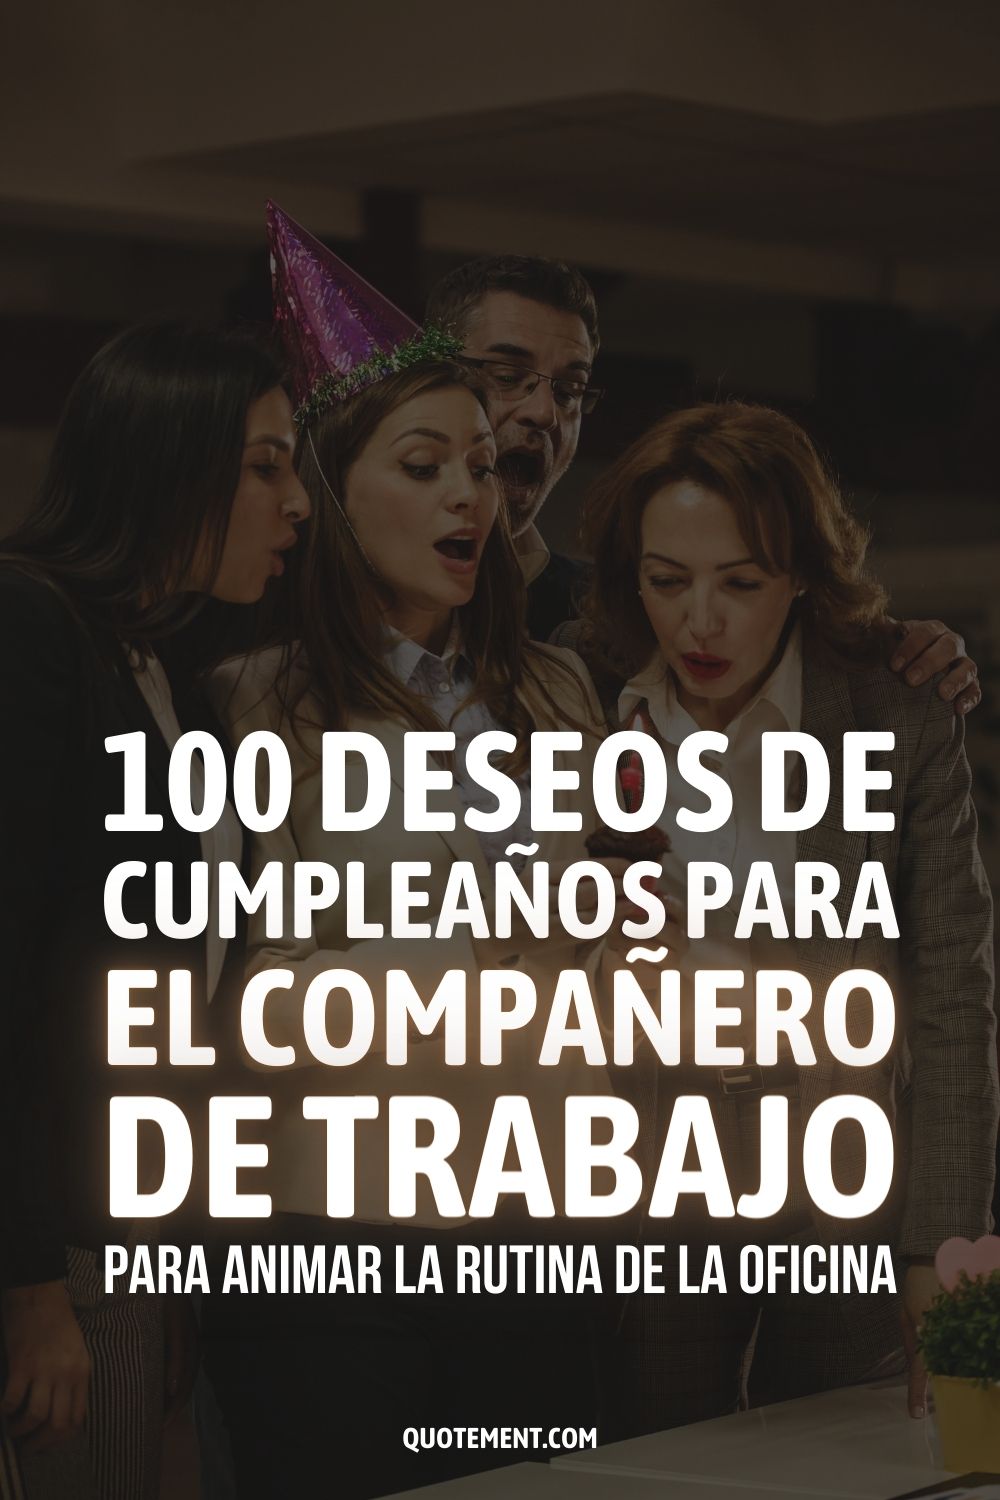 100 deseos de cumpleaños para el compañero de trabajo para animar la rutina de la oficina 